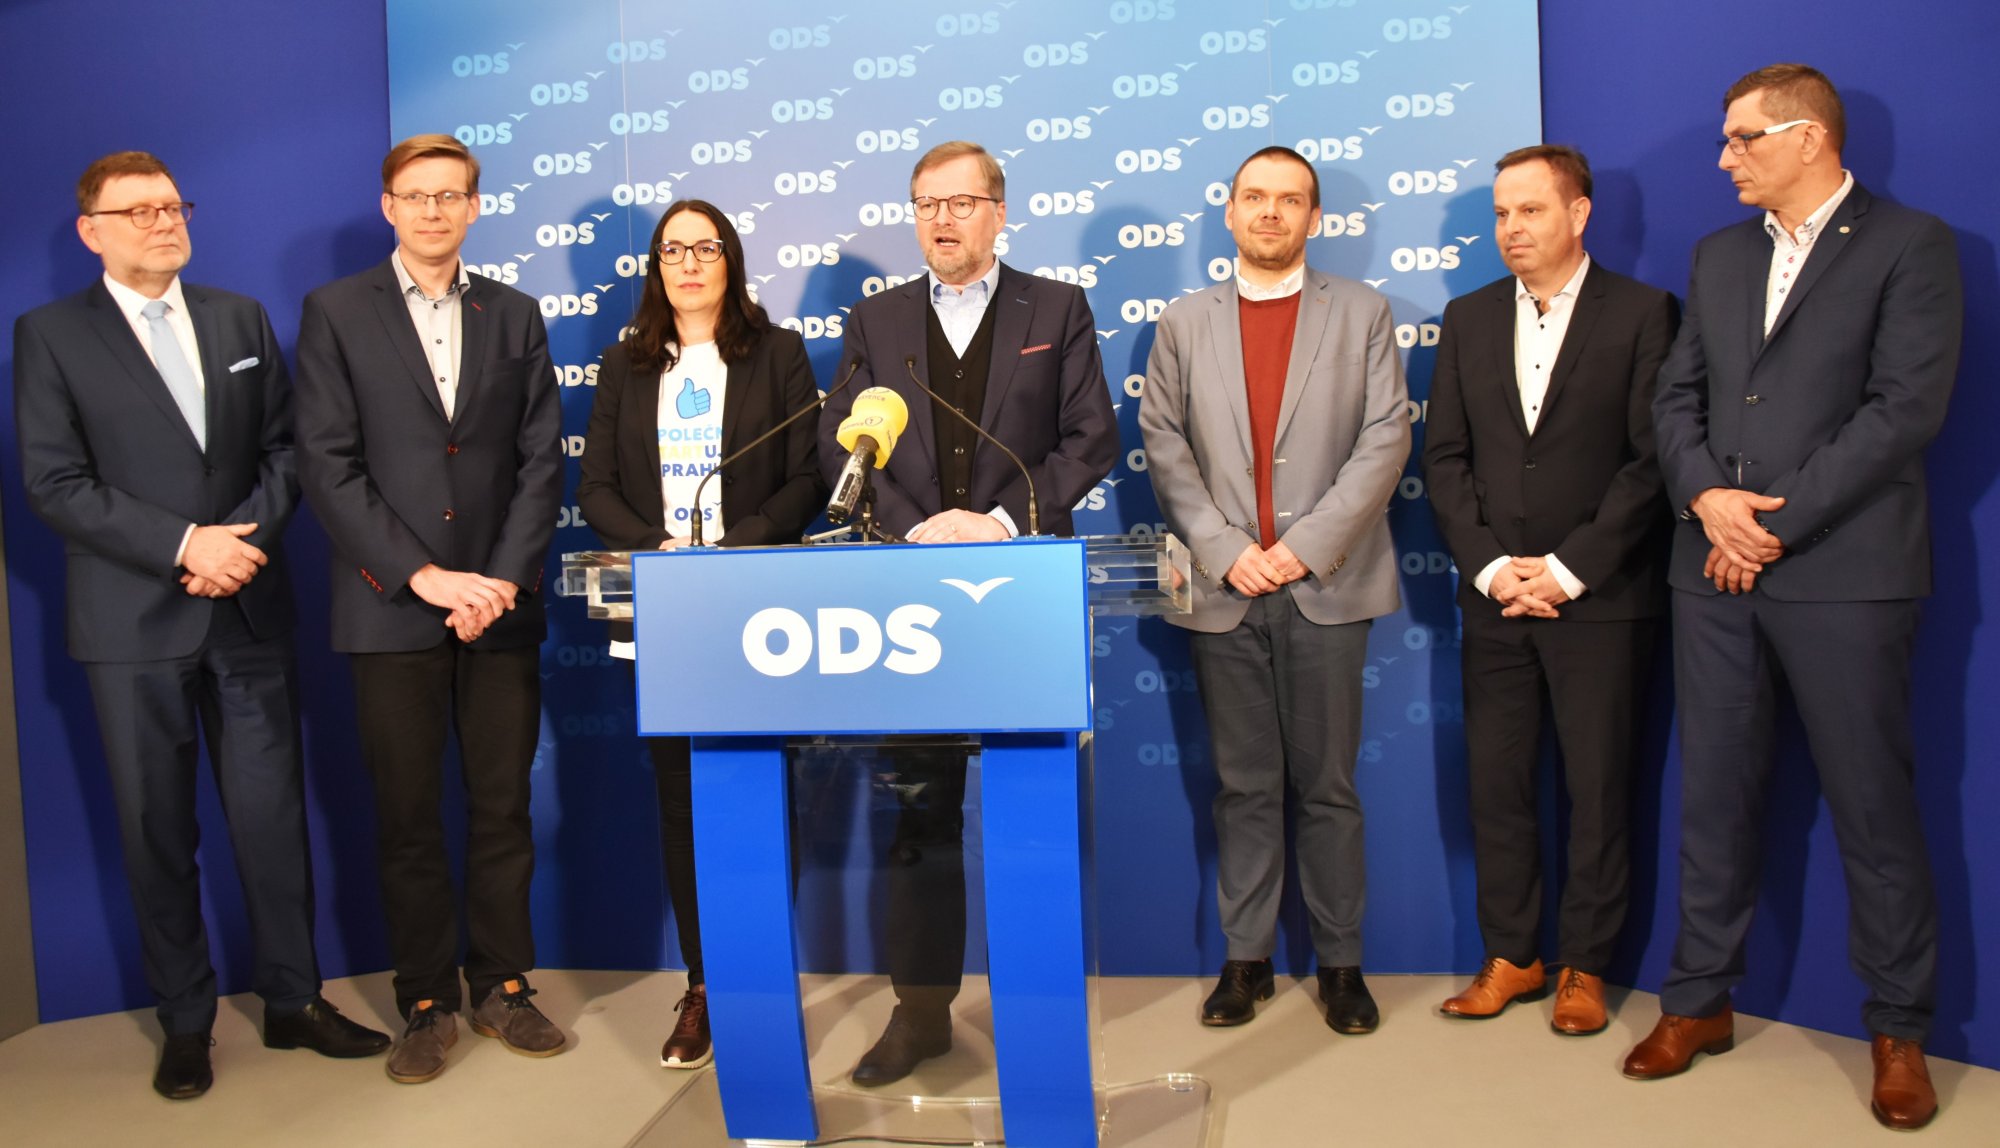 ODS: V komunálních volbách se zaměříme na veřejnou správu, infrastrukturu, kvalitní veřejné služby a pestrý život ve městech a obcích